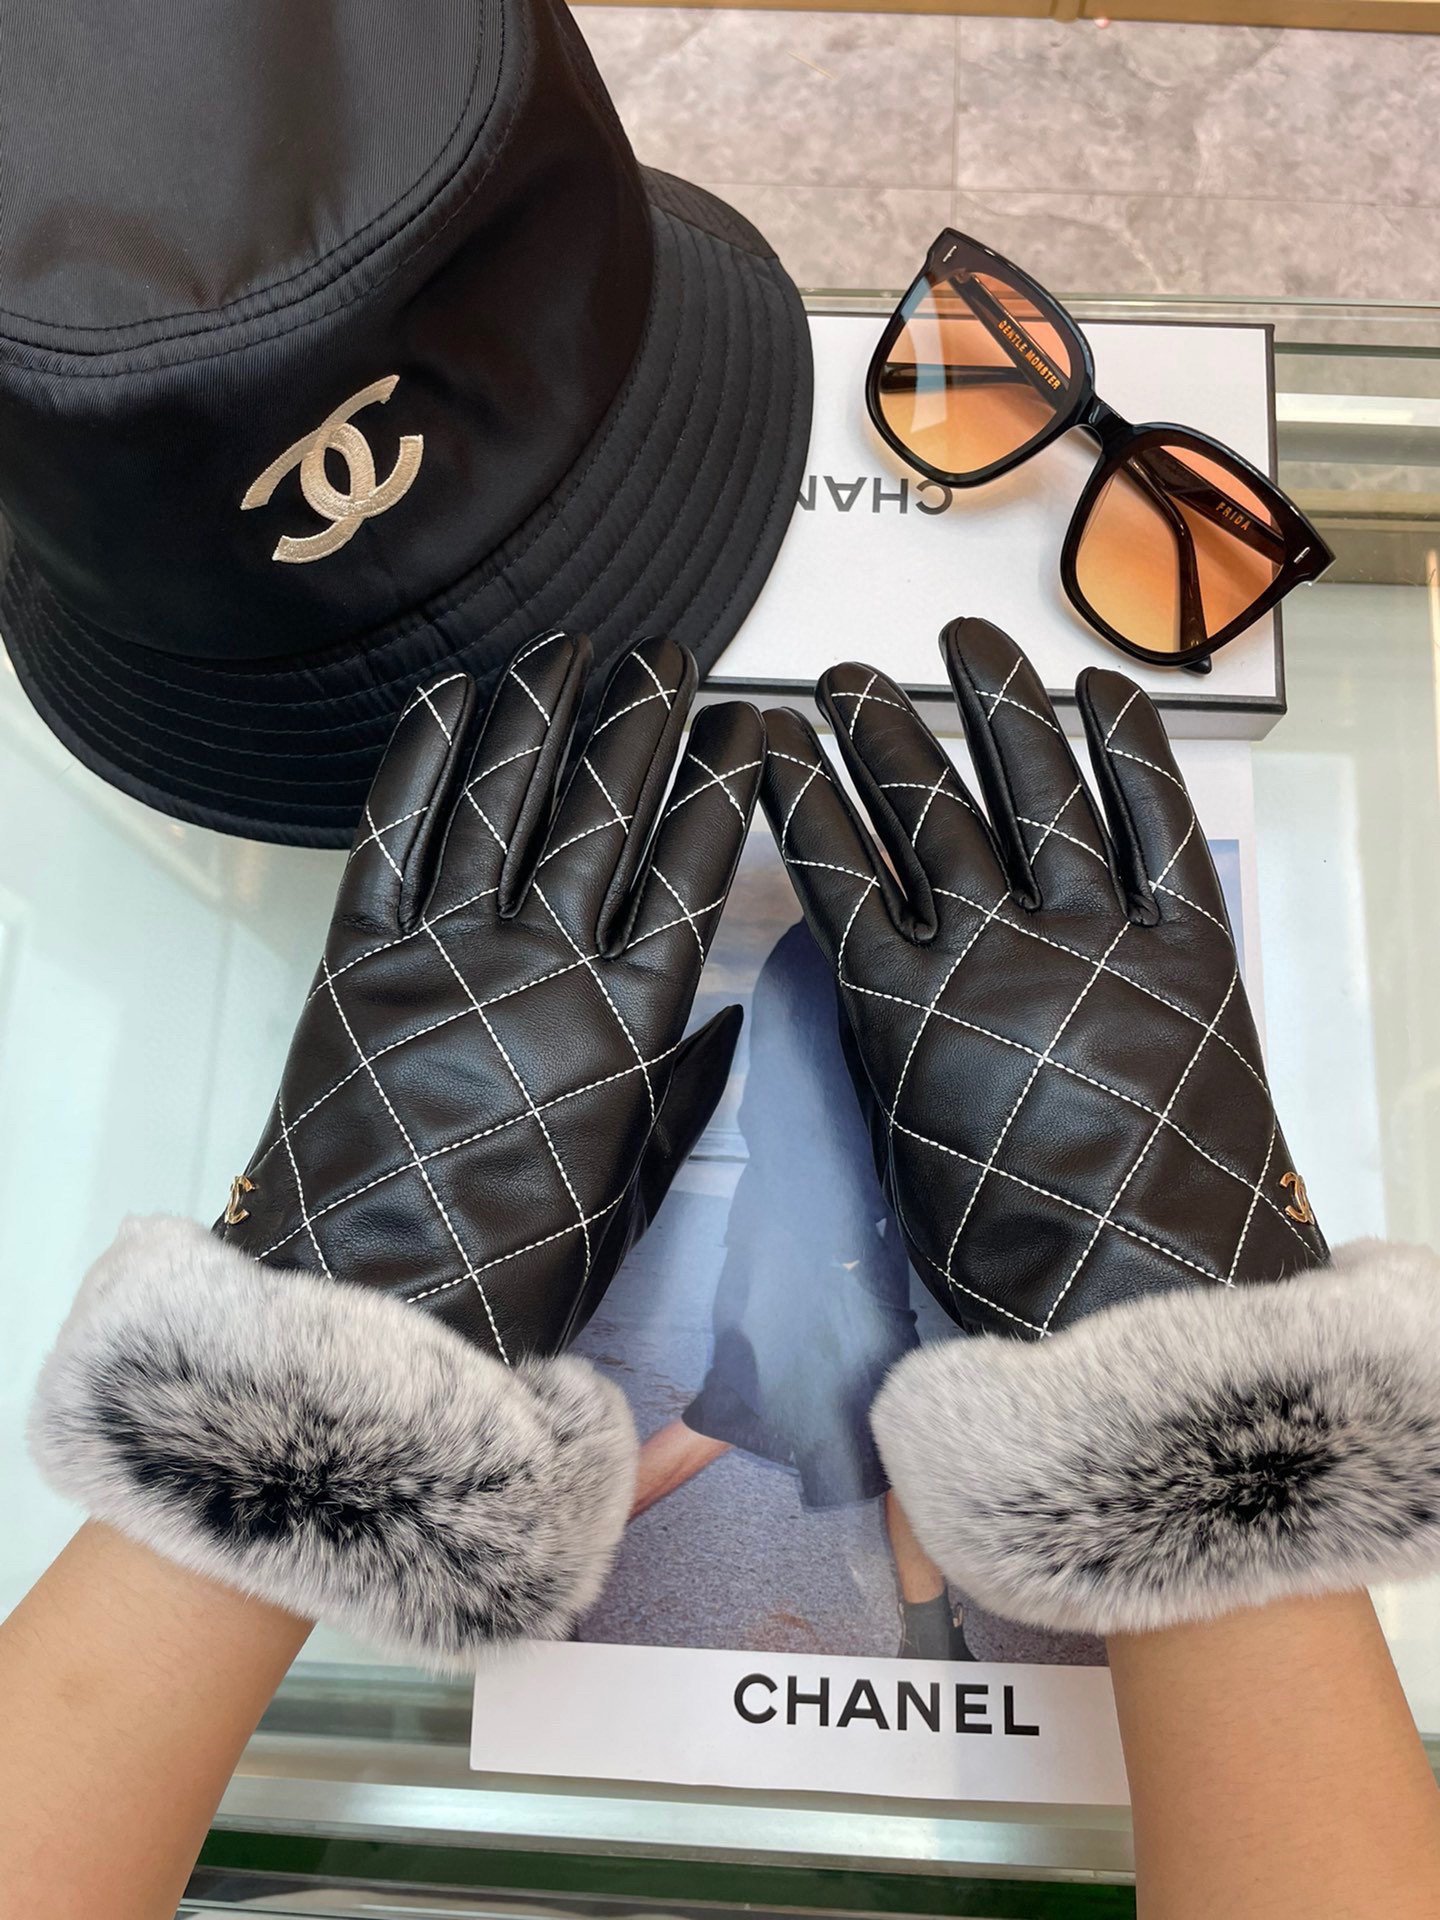 Chanel新款女士手套一级羊皮皮质超薄保暖舒适柔软舒适特显手型质感超群码数均码